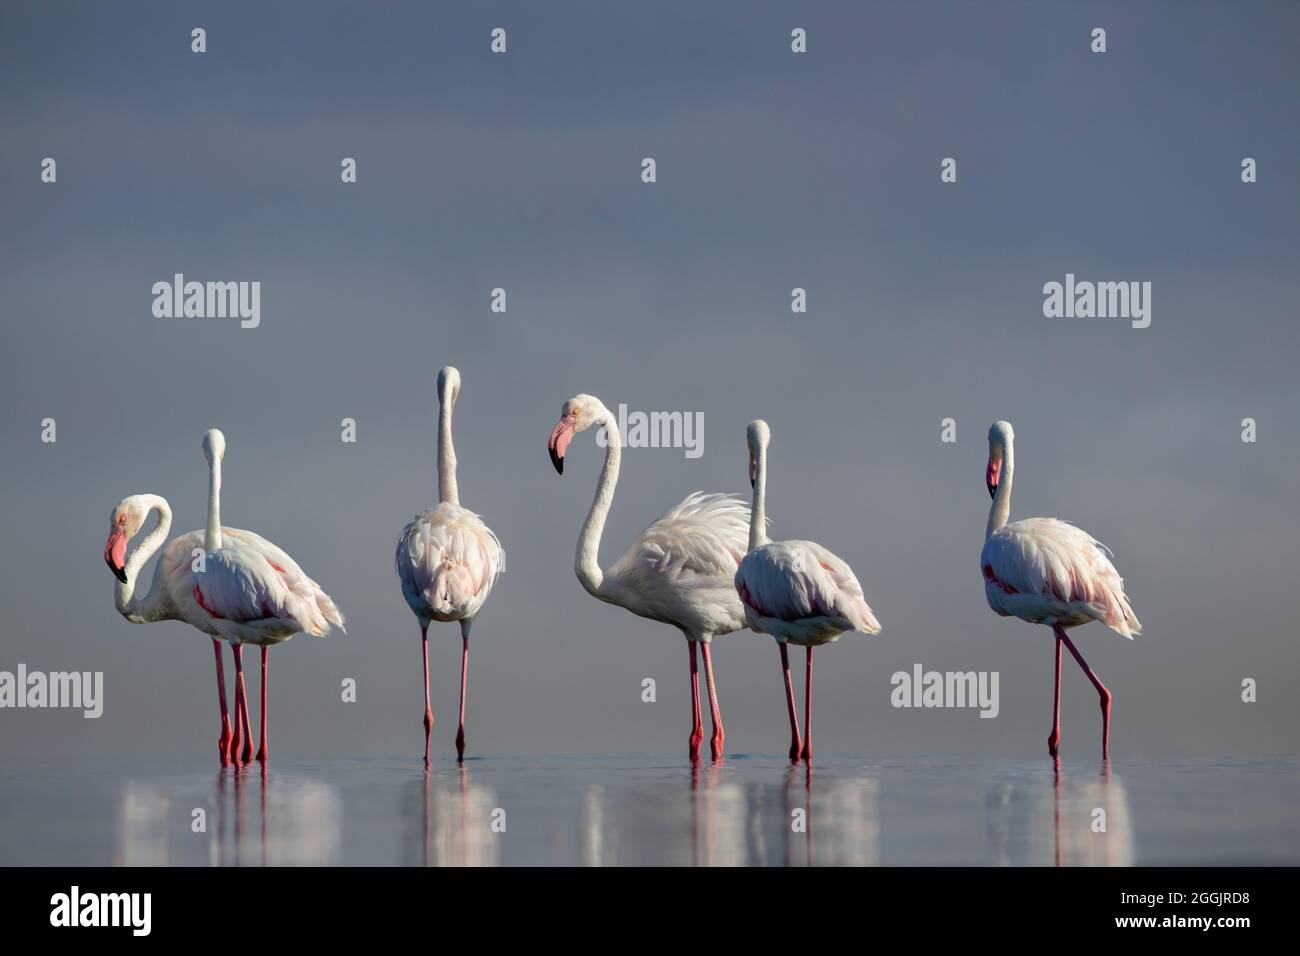 Wilde afrikanische Vögel. Eine Herde rosa afrikanischer Flamingos, die an einem sonnigen Tag vor dem Hintergrund eines strahlenden Himmels um die blaue Lagune spazieren. Stockfoto